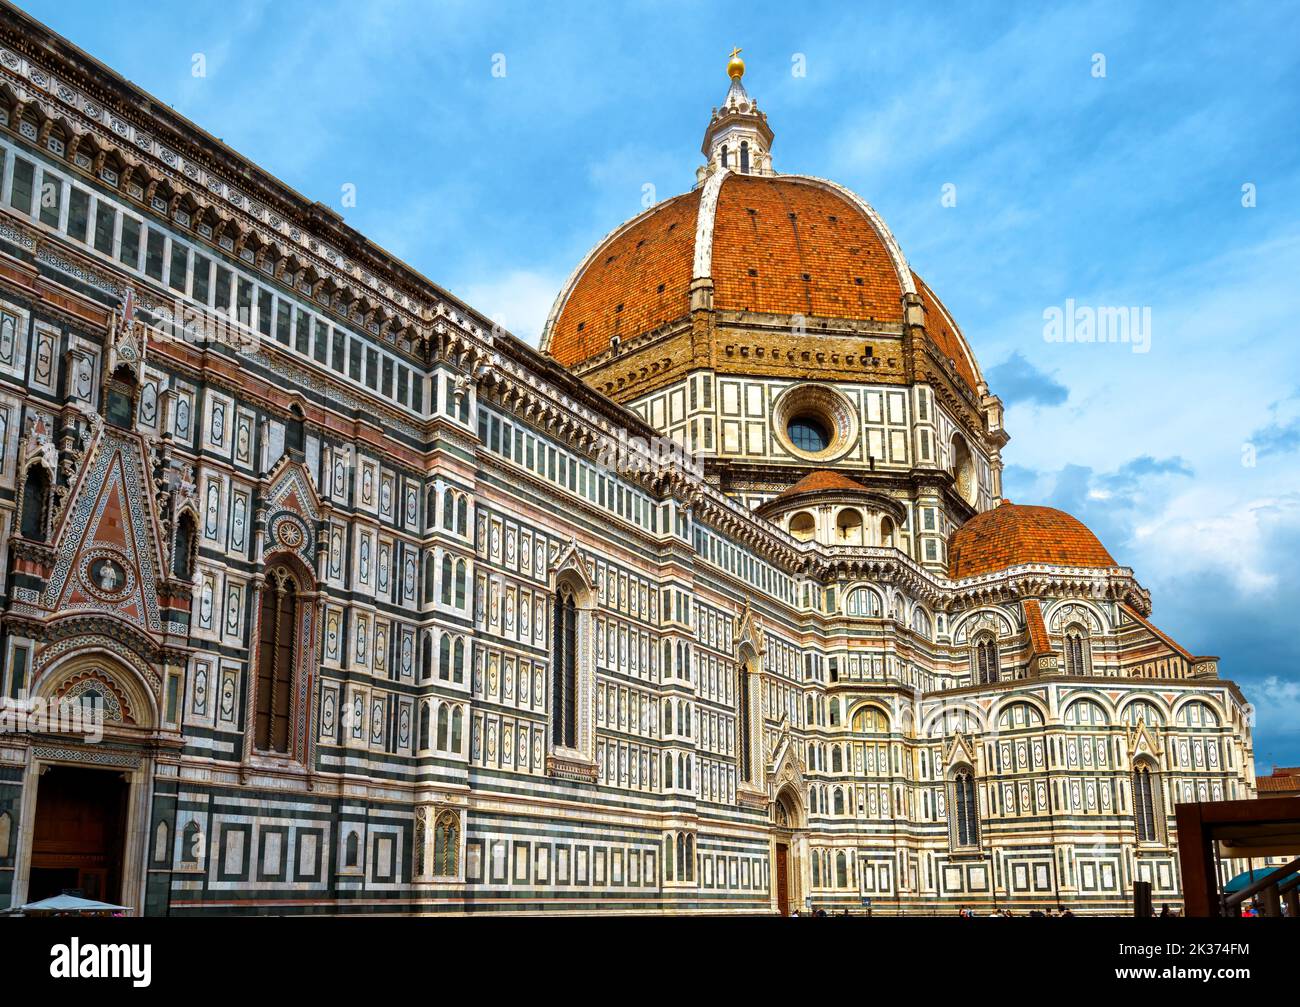 Duomo ou basilique de Santa Maria del Fiore, Florence, Italie. C'est le point de repère de la ville de Florence. Ancienne cathédrale Sainte-Marie de Fleur avec dôme rouge et Banque D'Images